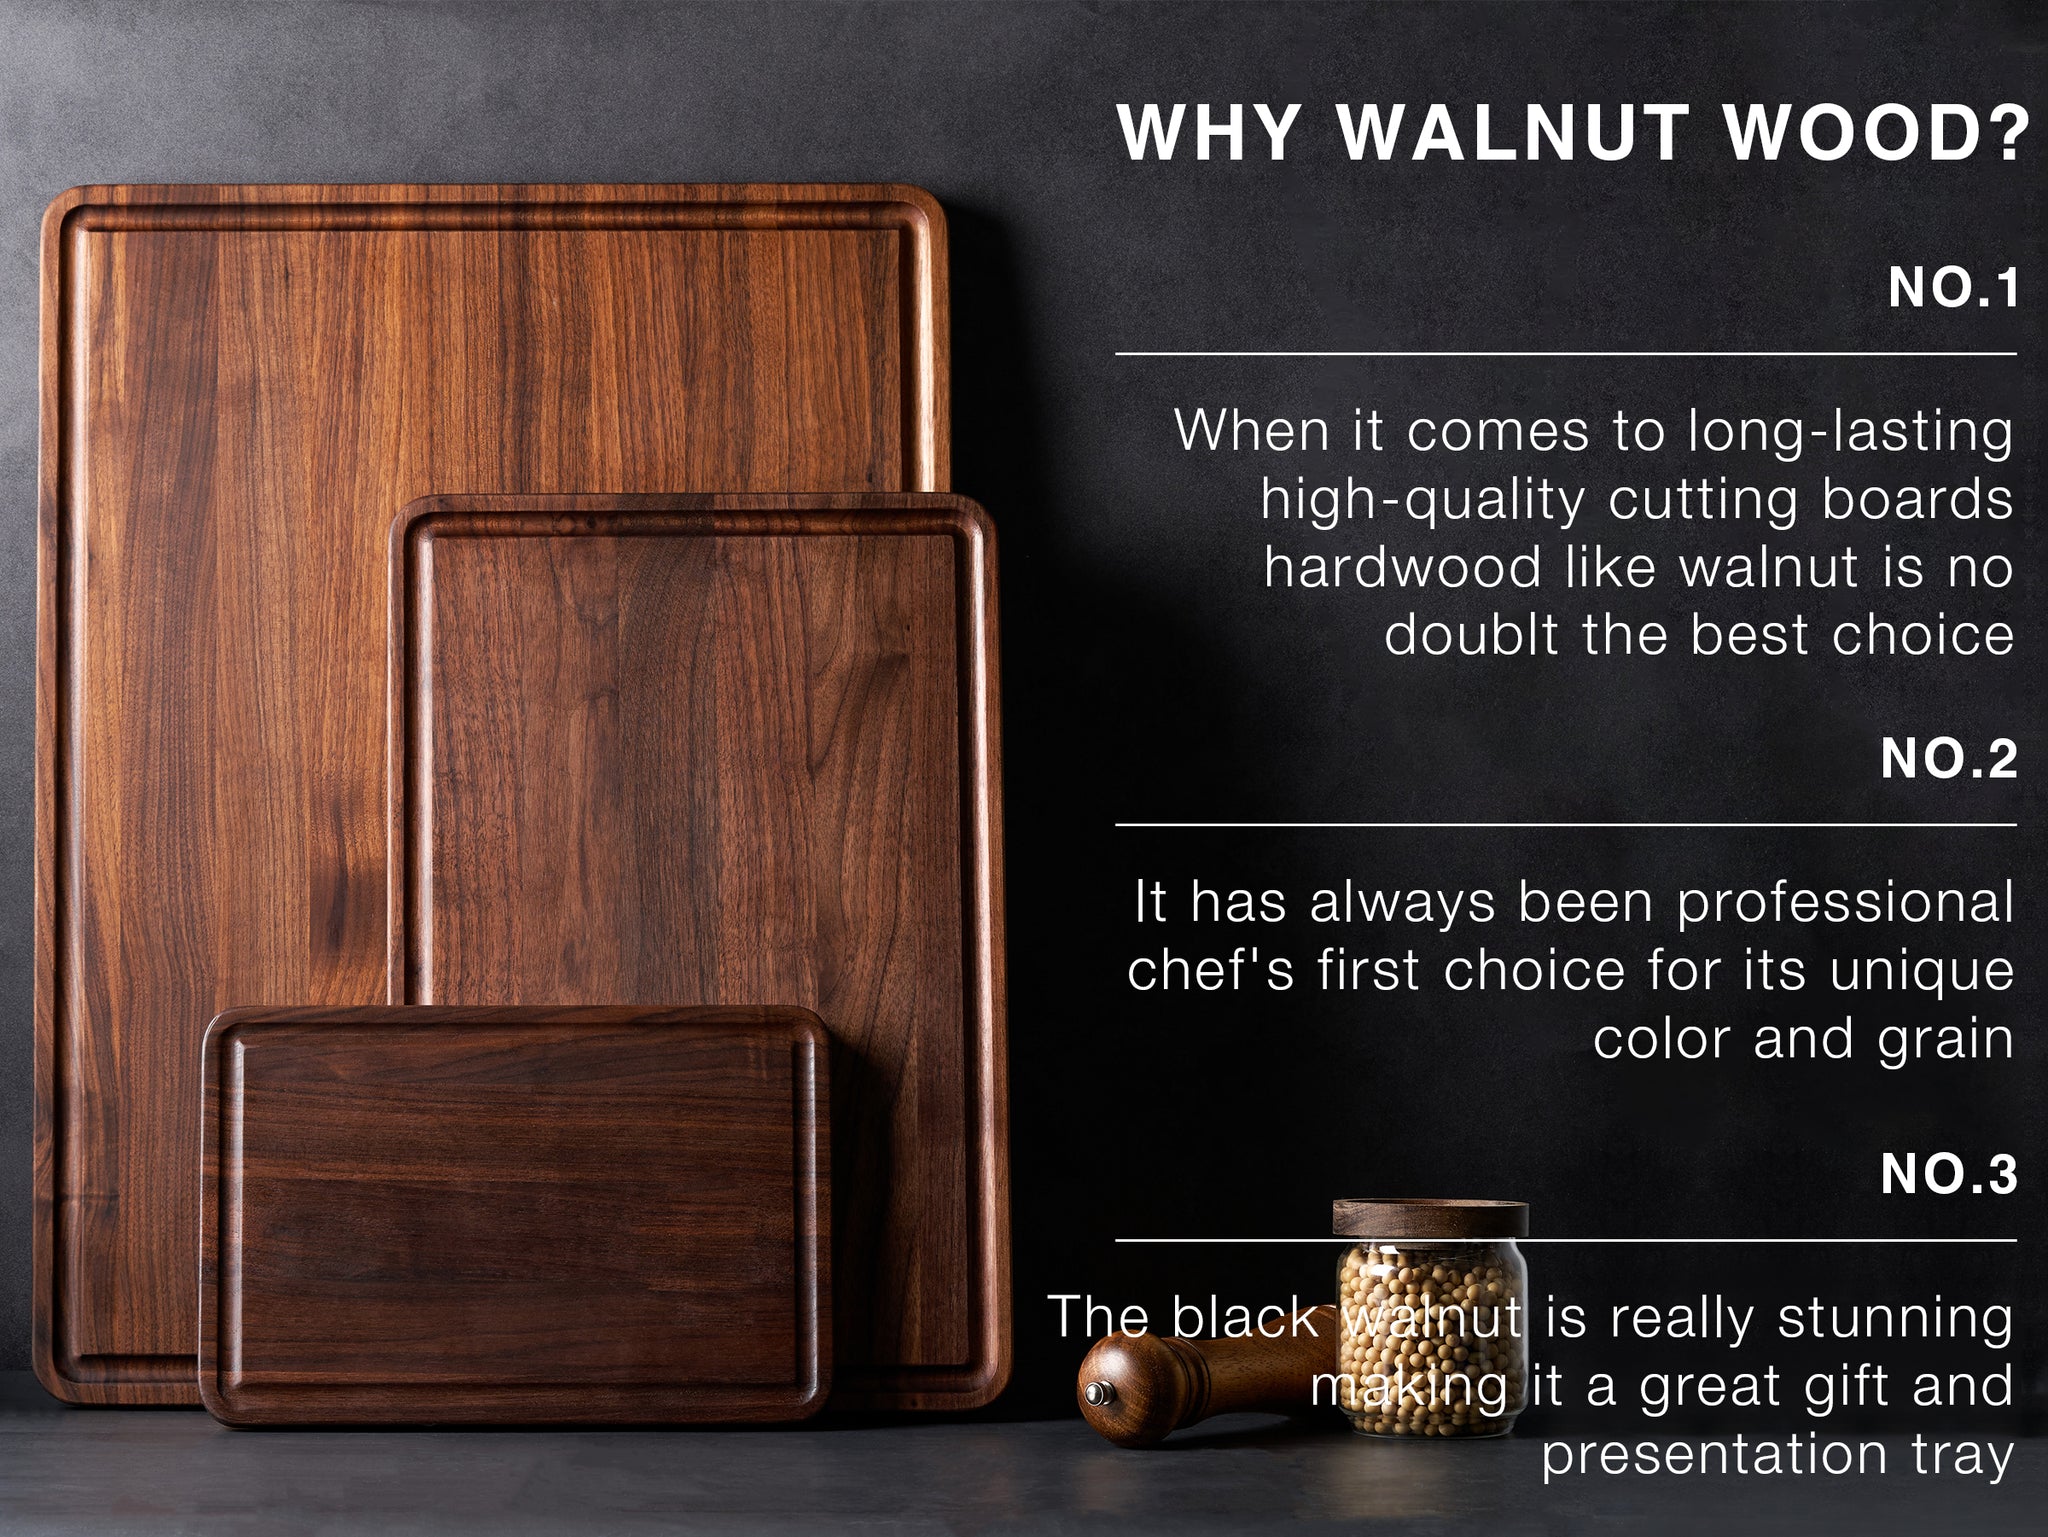 AZRHOM Extra Large Walnut Wood Cutting Board for Kitchen 24x18